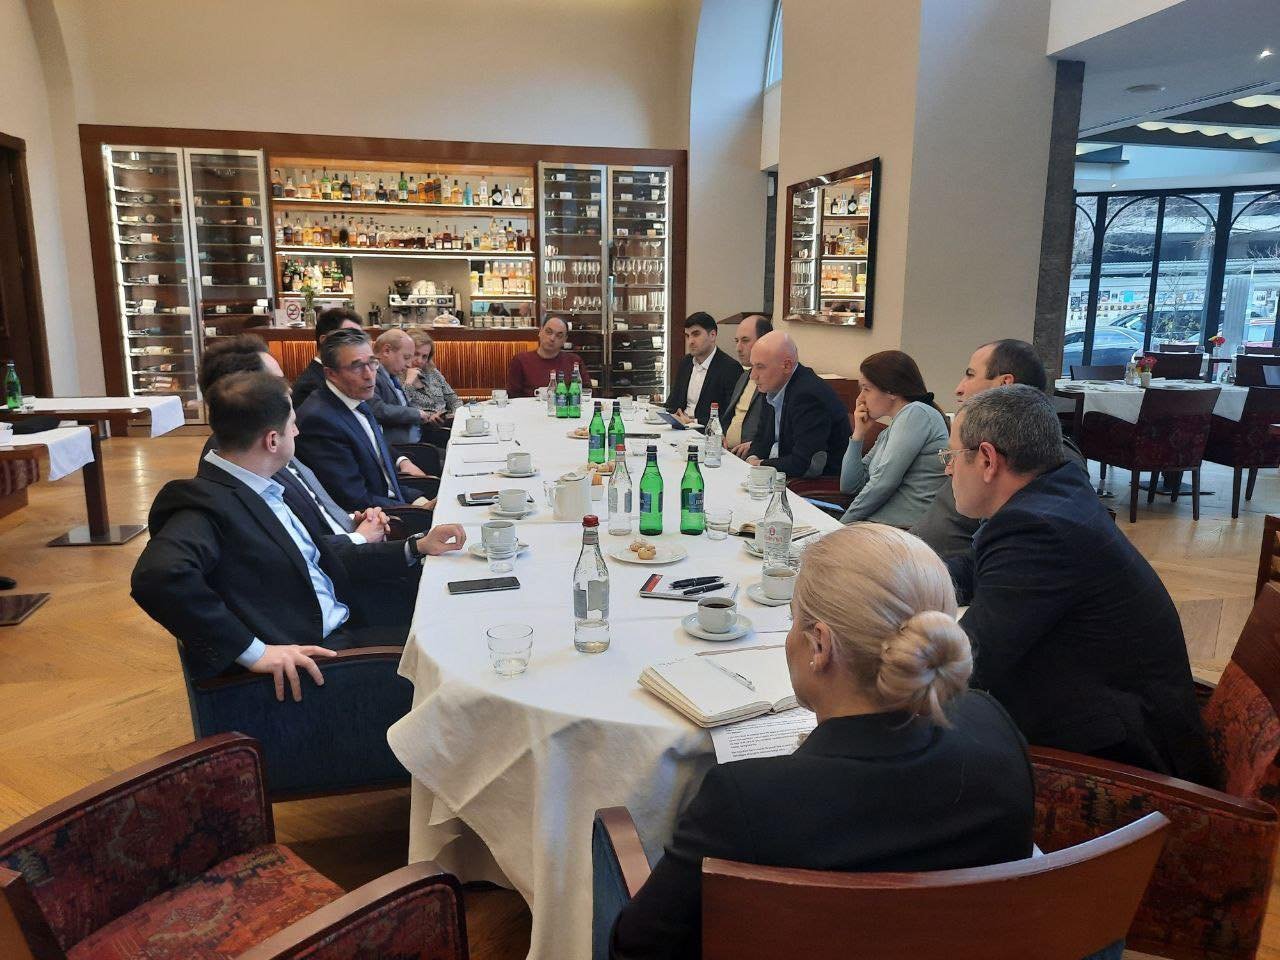 ՆԱՏՕ-ի նախկին գլխավոր քարտուղարը հանդիպել է հայաստանյան որոշ ԶԼՄ-ների ներկայացուցիչների հետ և քննարկել Հայաստանի անվտանգային հիմնահարցերն ու ՀՀ տարածքների օկուպացիան Ադրբեջանի կողմից